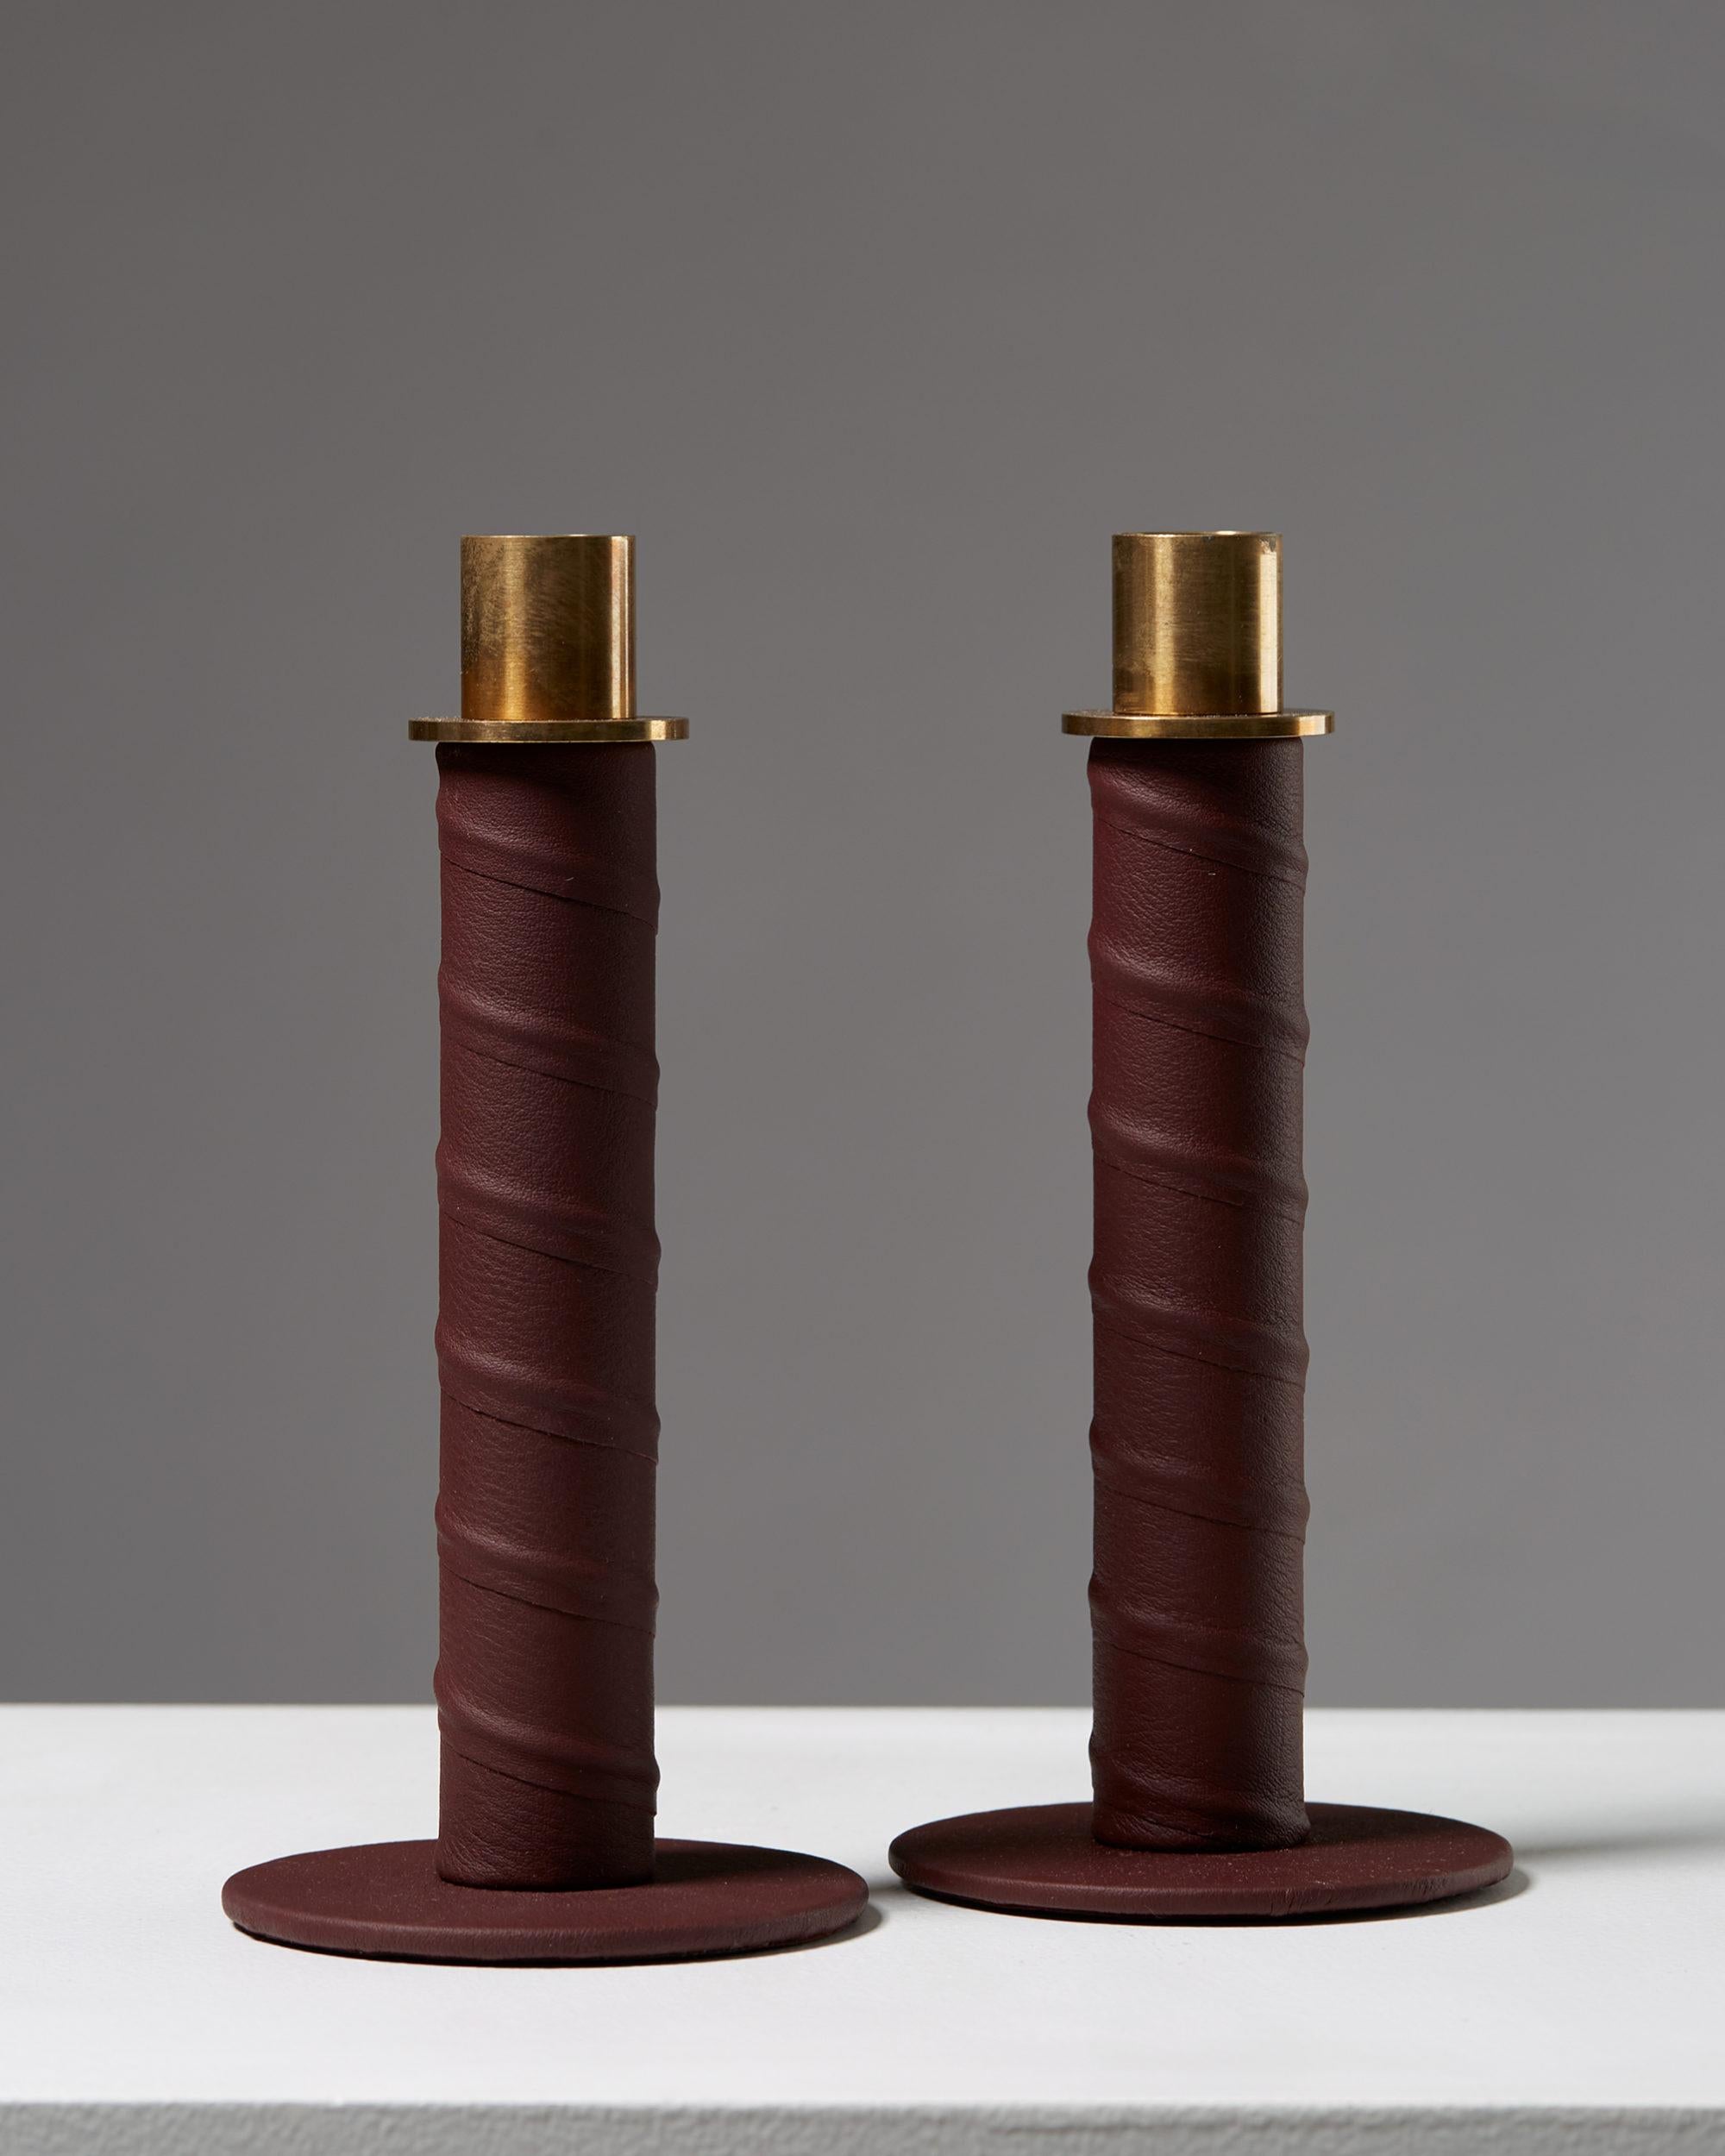 Set of candlesticks “Herrgård” designed by Alexander Lervik, Sweden, 2013.
Steel, leather and brass.

Measures: Height 19 cm/ 7 3/8